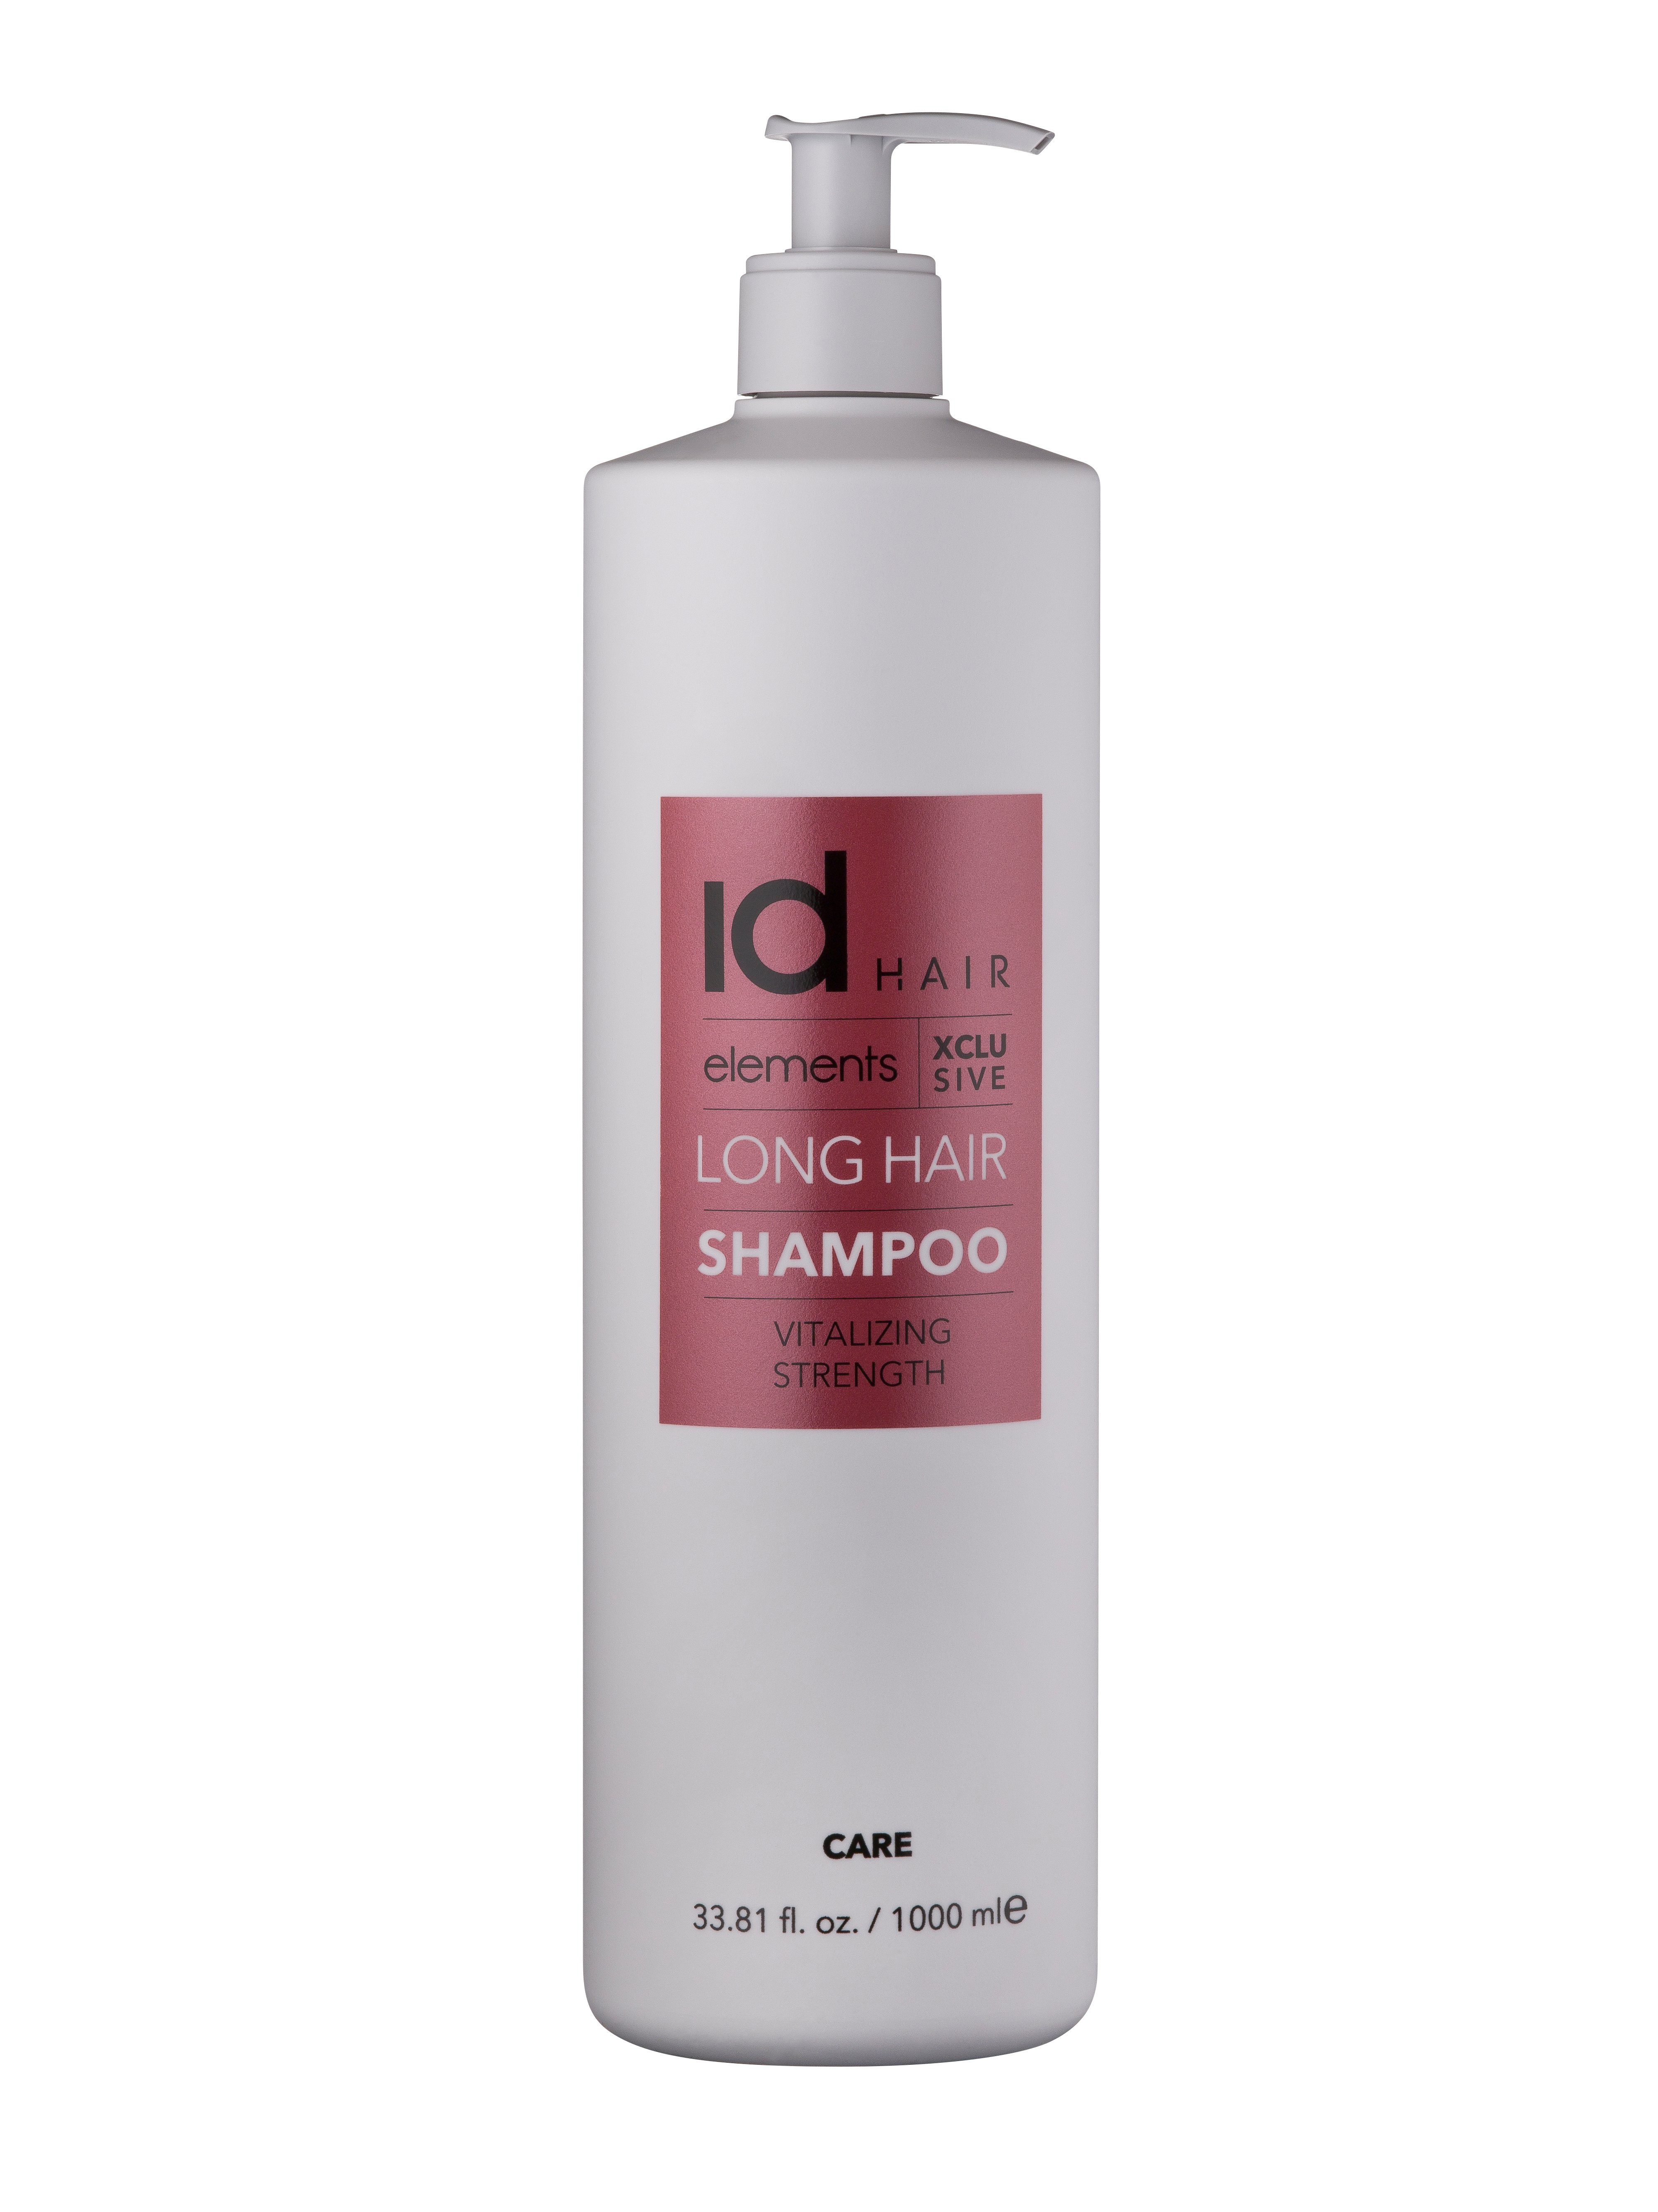 IdHAIR - Elements Xclusive Long Hair Shampoo 1000 ml